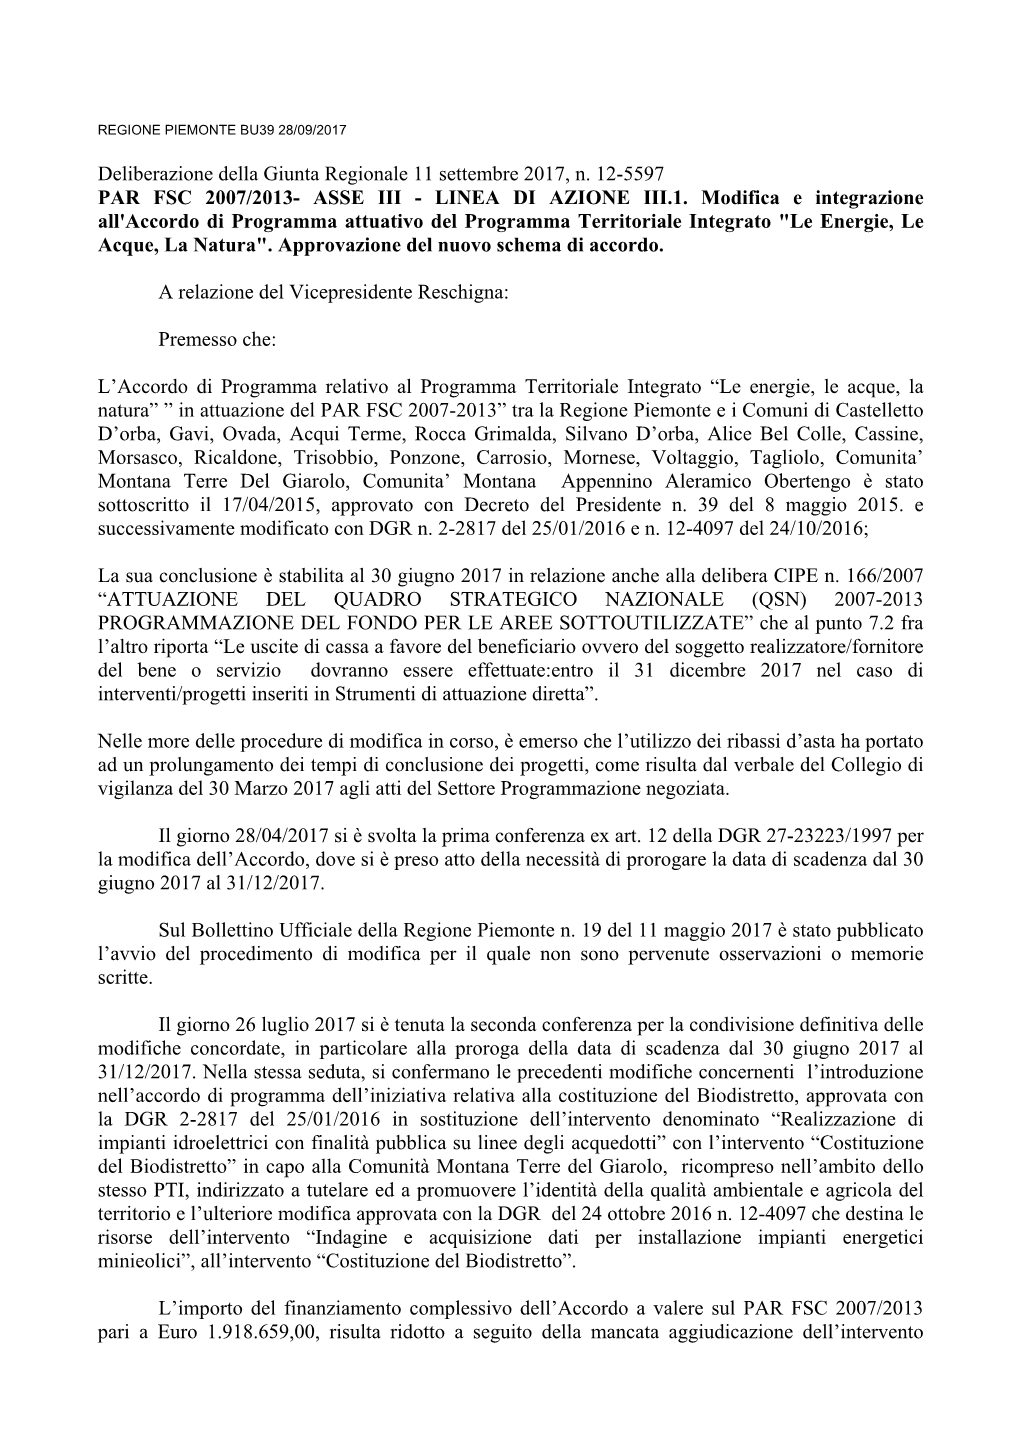 Deliberazione Della Giunta Regionale 11 Settembre 2017, N. 12-5597 PAR FSC 2007/2013- ASSE III - LINEA DI AZIONE III.1